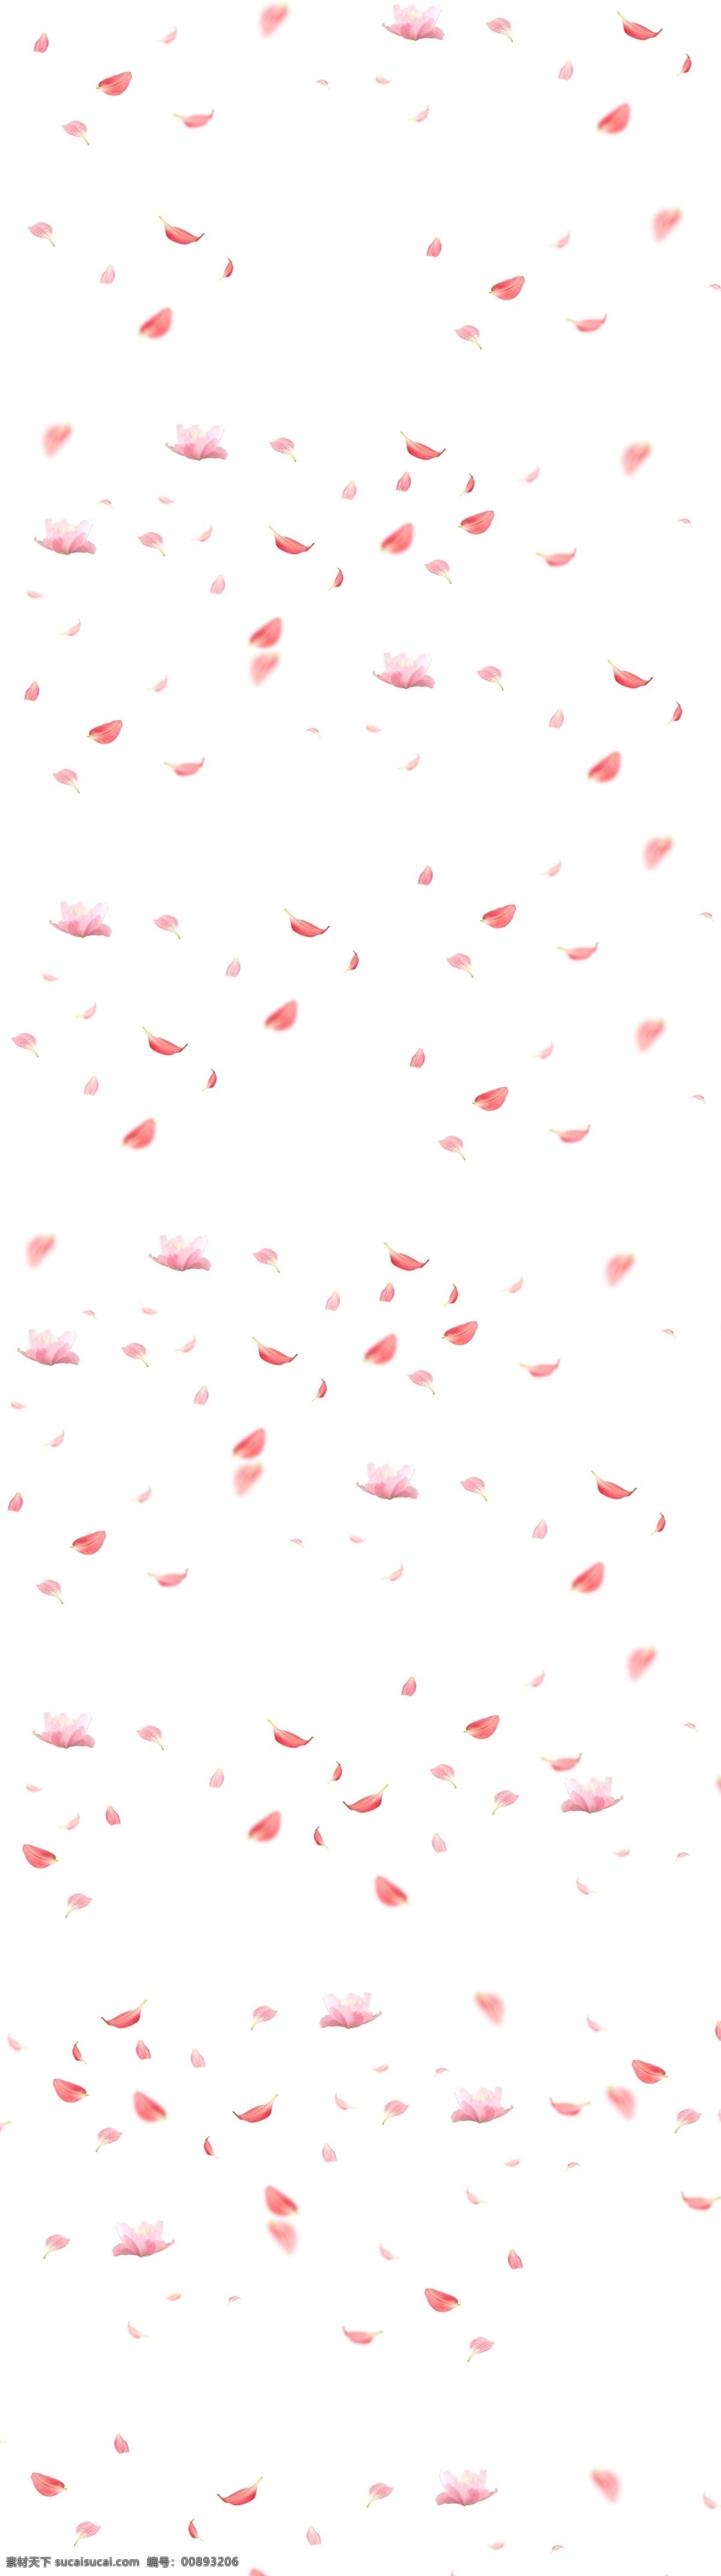 桃花 花瓣图片 花瓣 红色花瓣 透明底 免抠图 分层图 分层